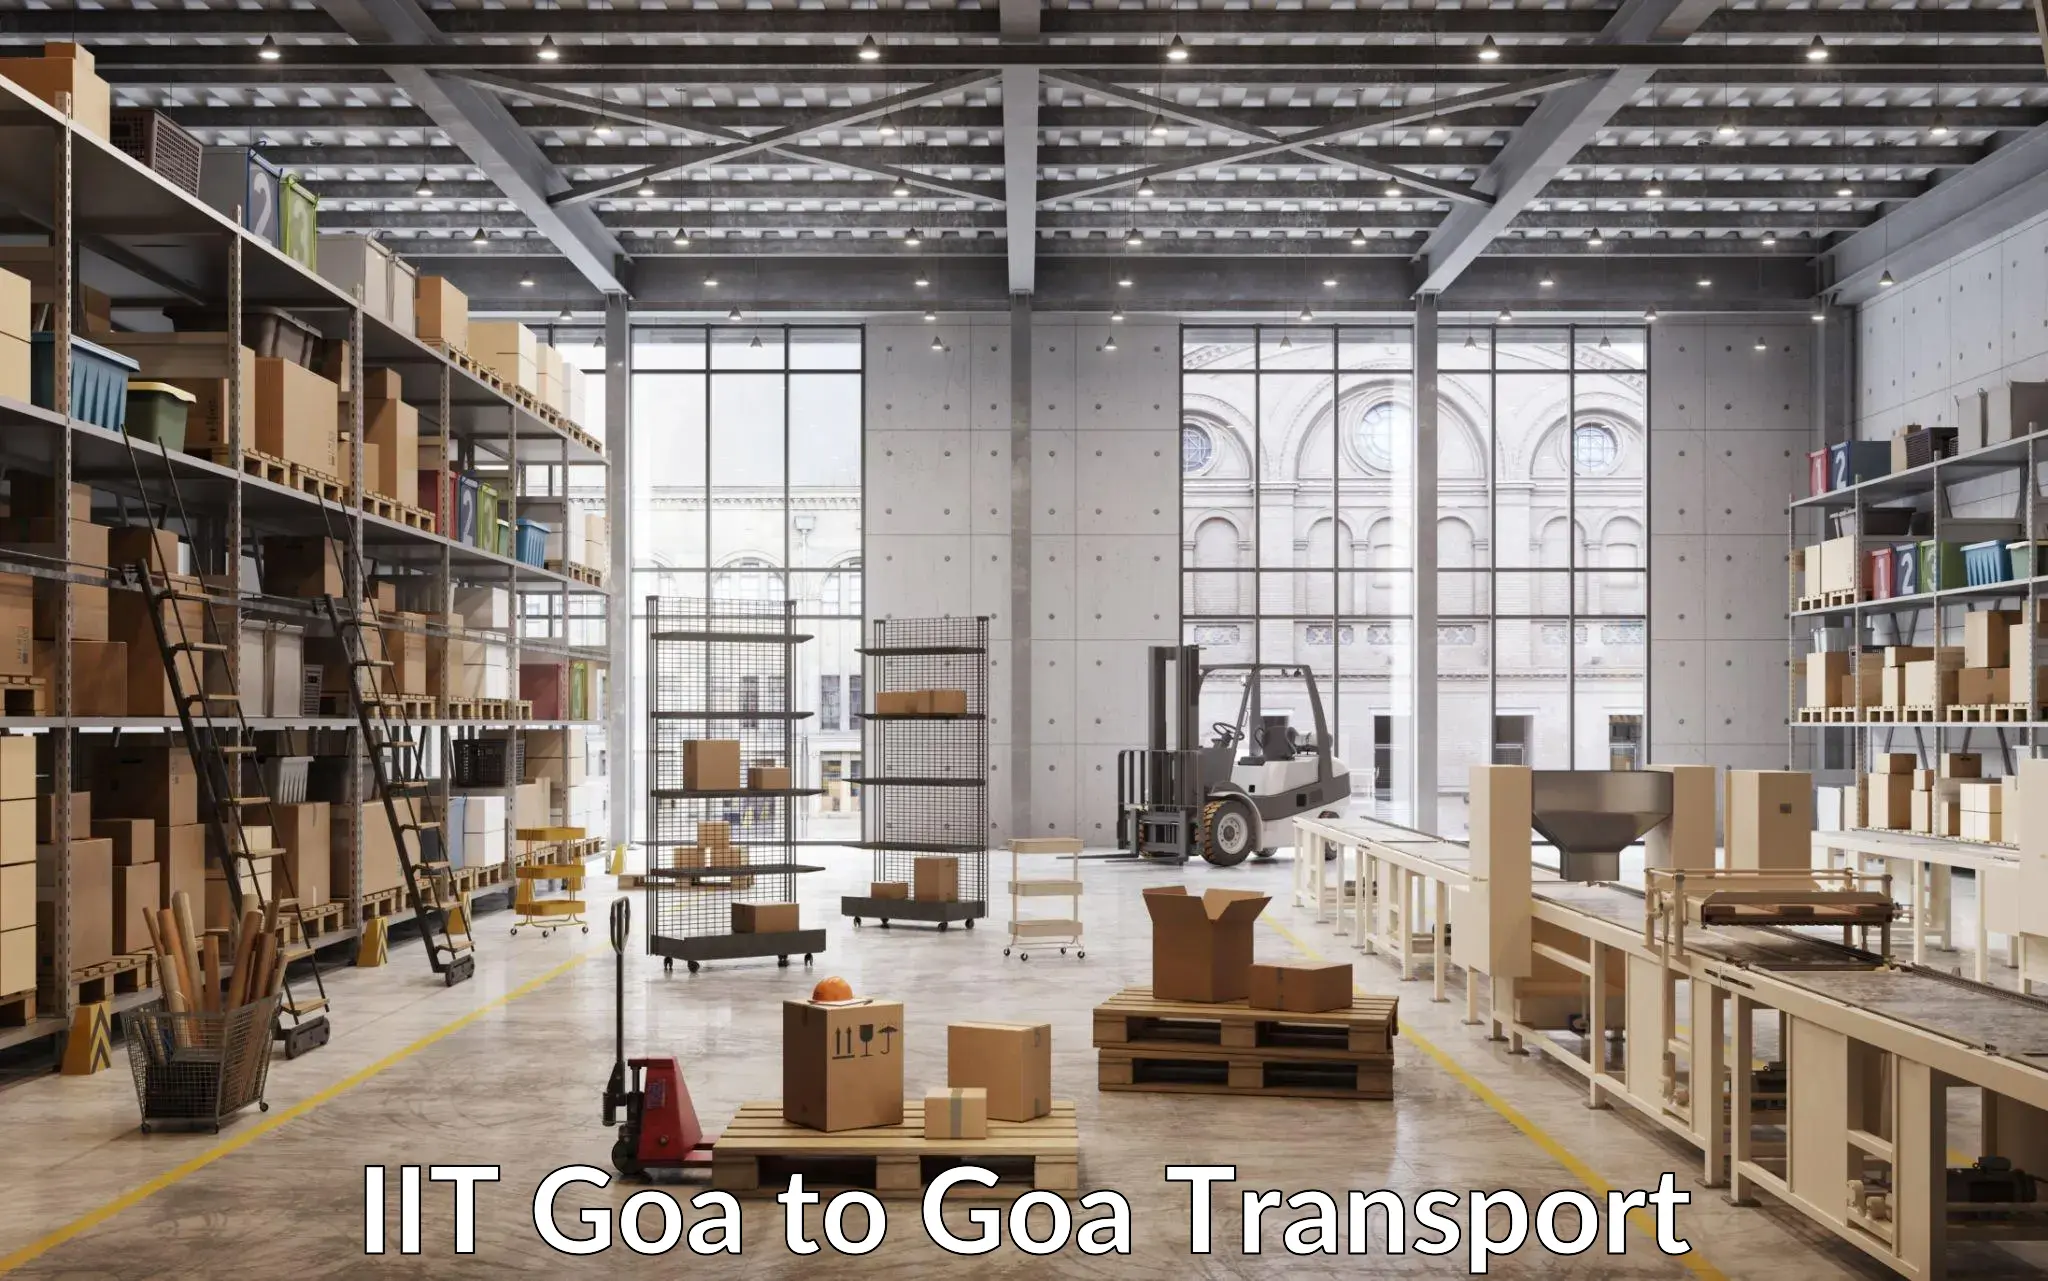 Luggage transport services IIT Goa to Goa